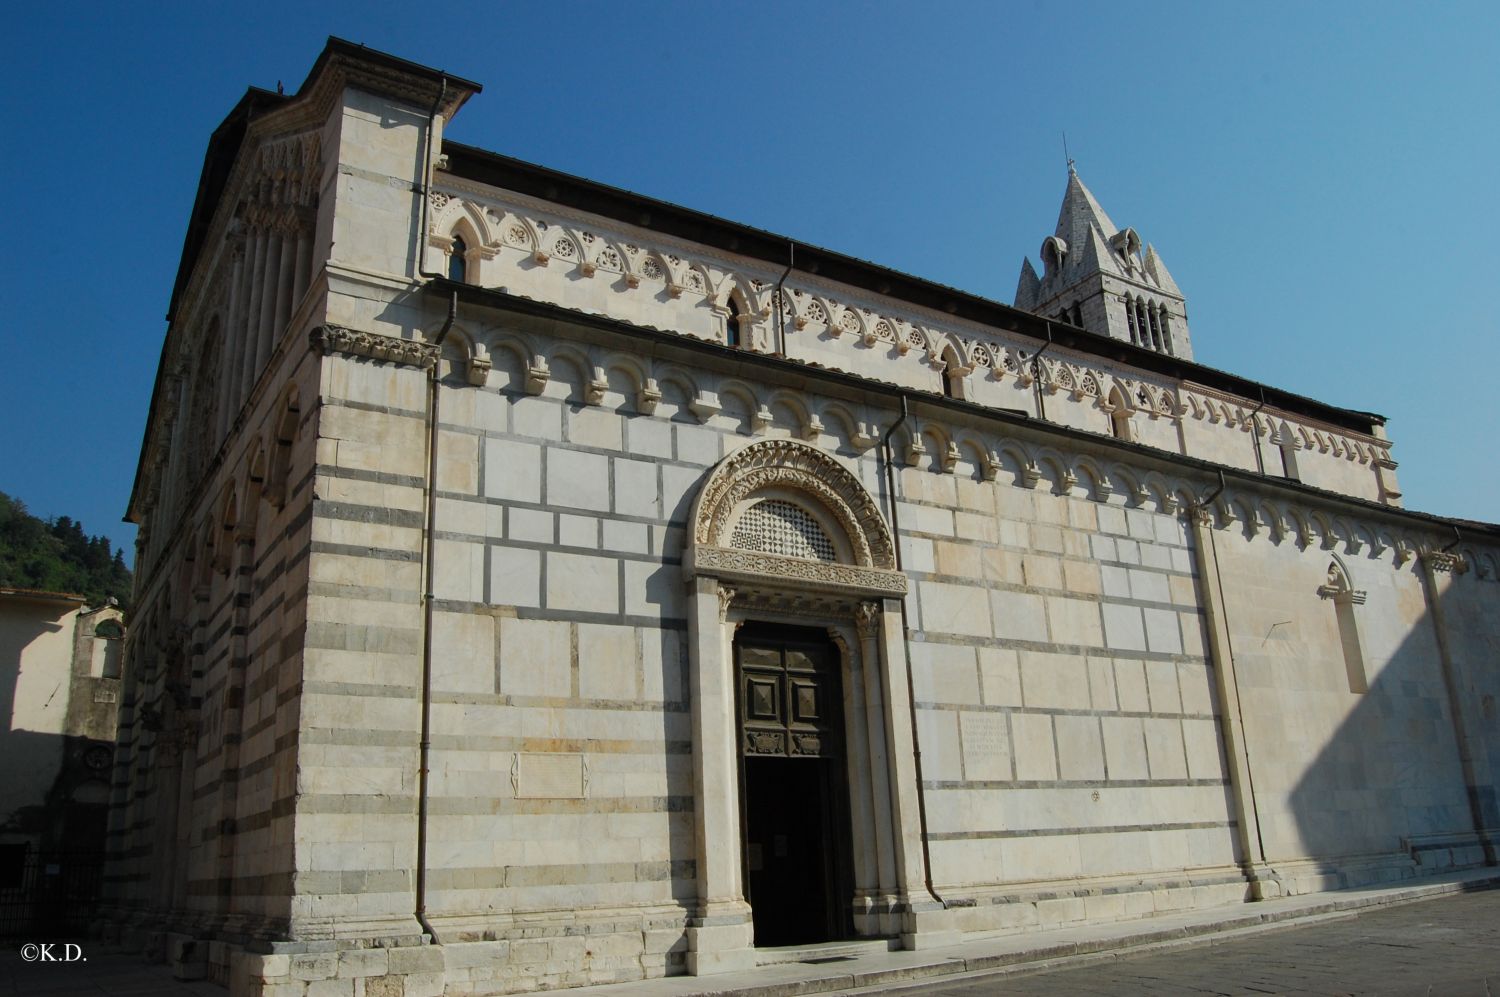 Dom zu Carrara (Italien)